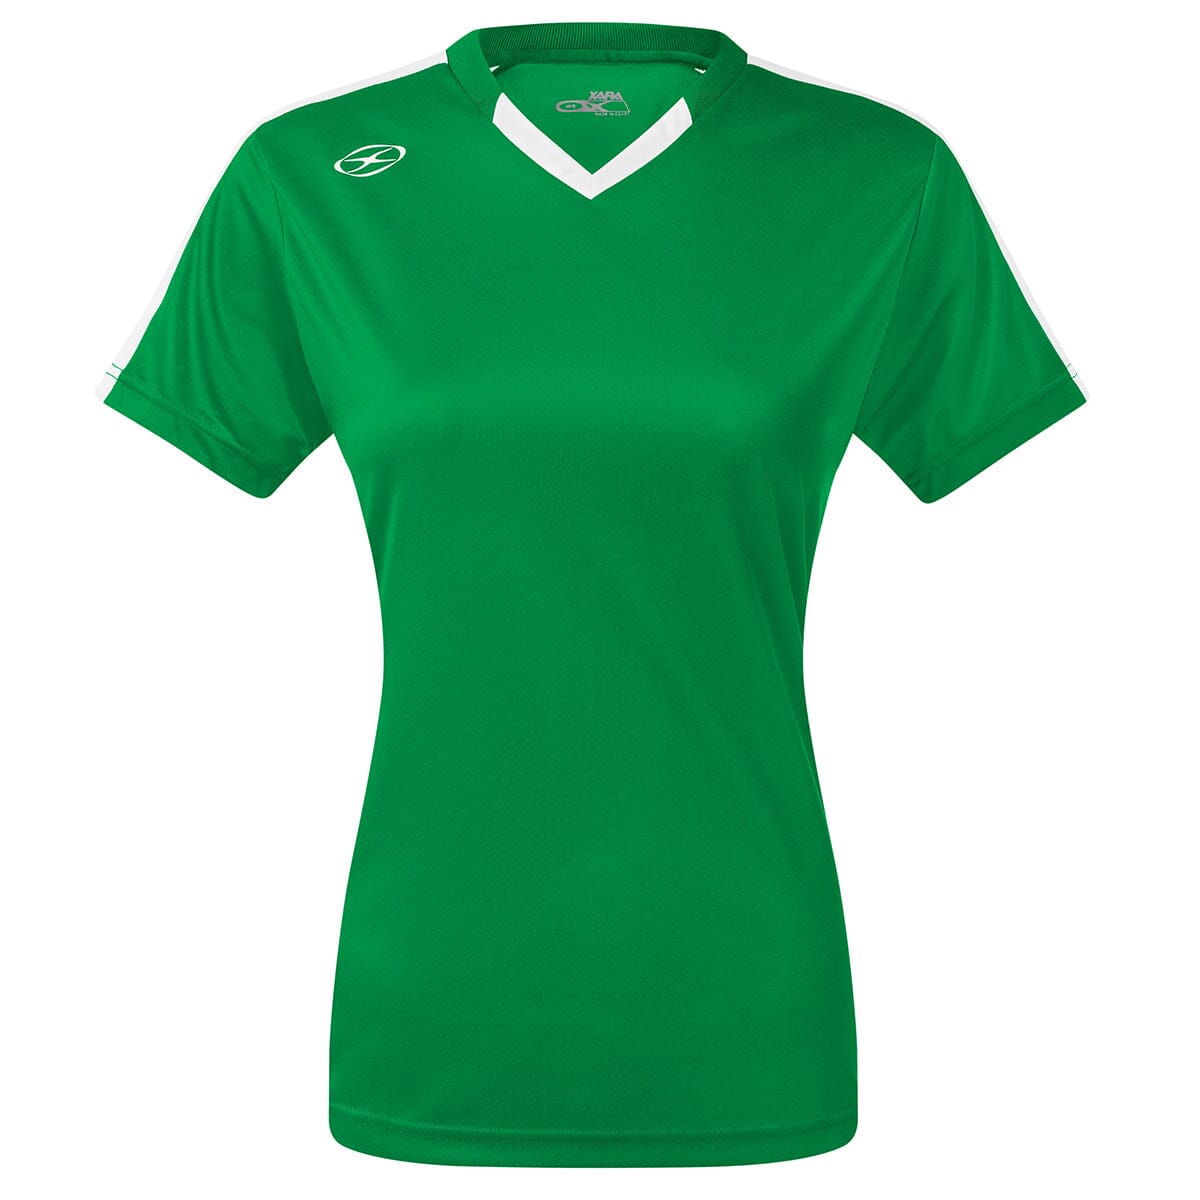 Britannia Jersey - Home Colors - Female Shirt Xara Soccer Green/White Womens Medium 